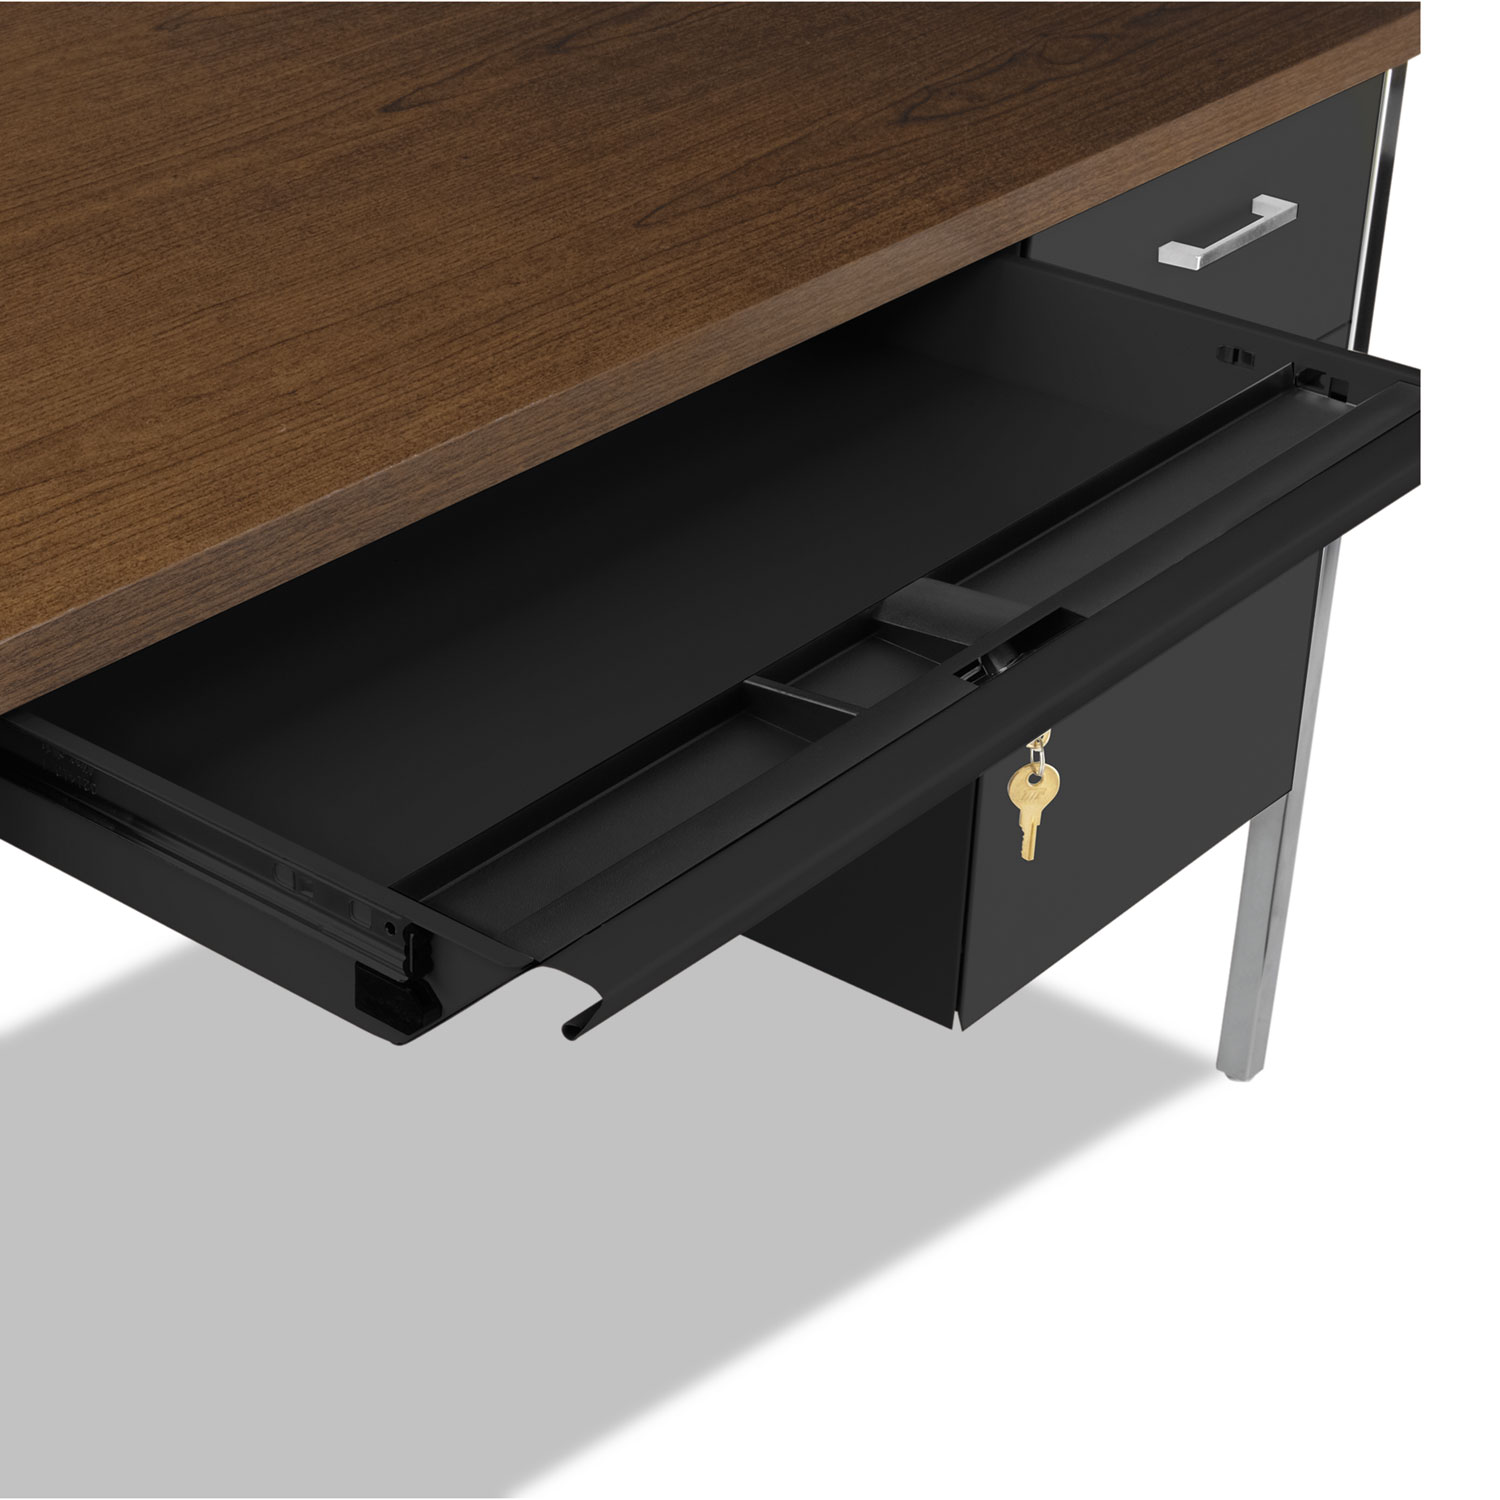 Double Pedestal Steel Desk, Metal Desk, 72w x 36d x 29-1/2h, Walnut/Black